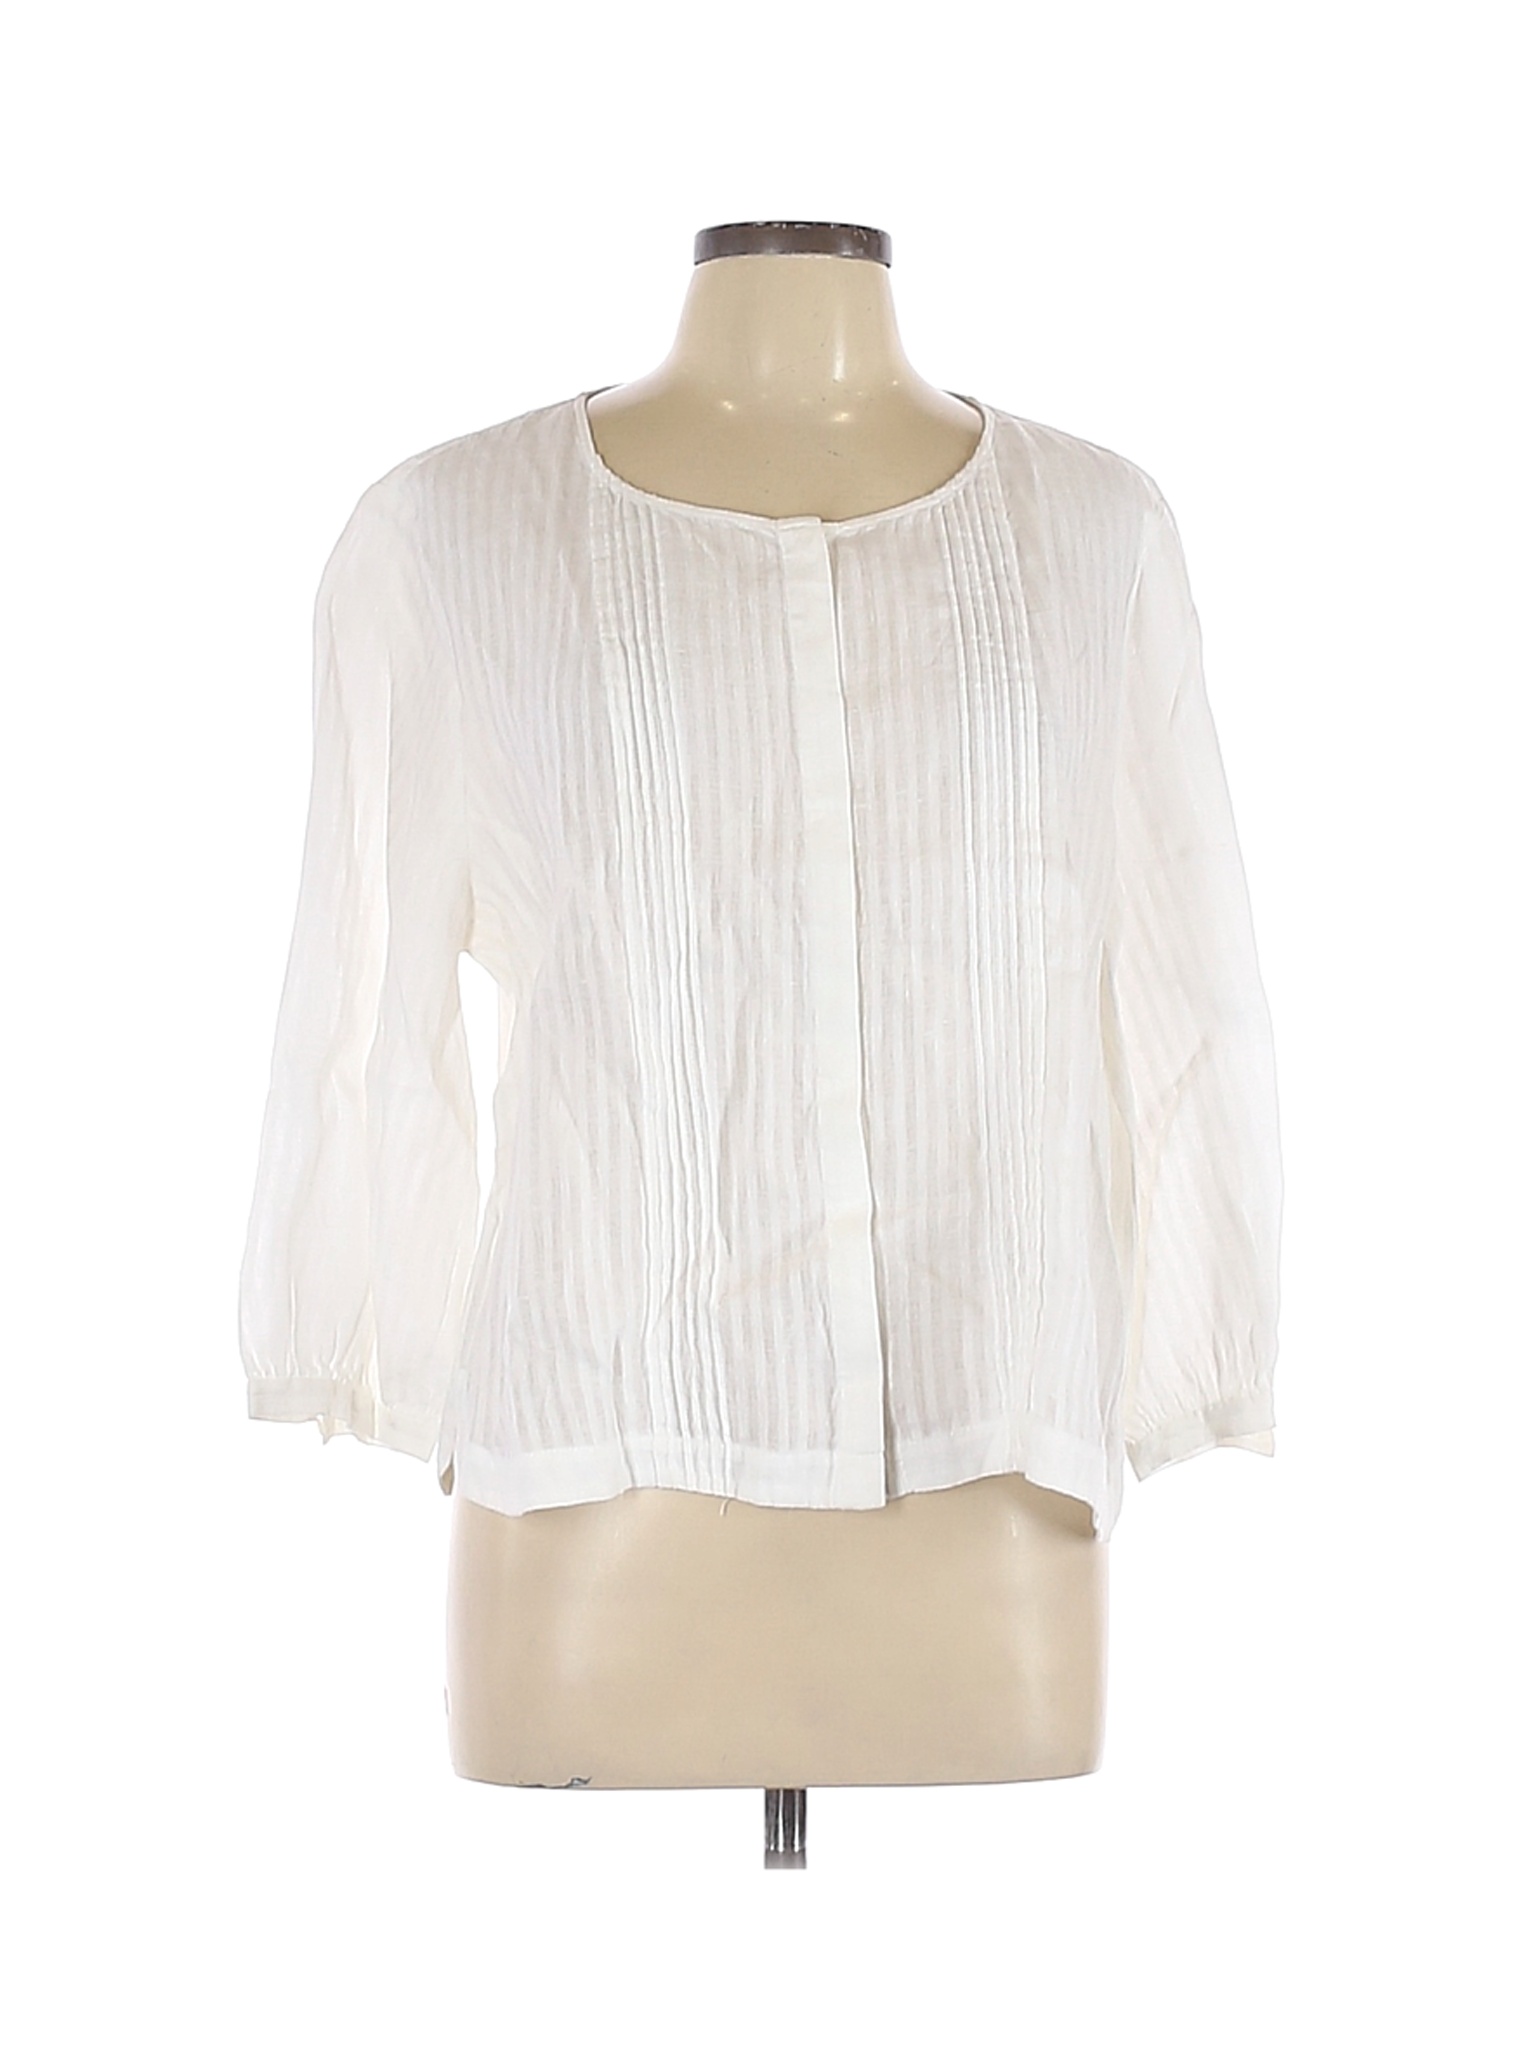 FRAME Women White Long Sleeve Blouse L | eBay